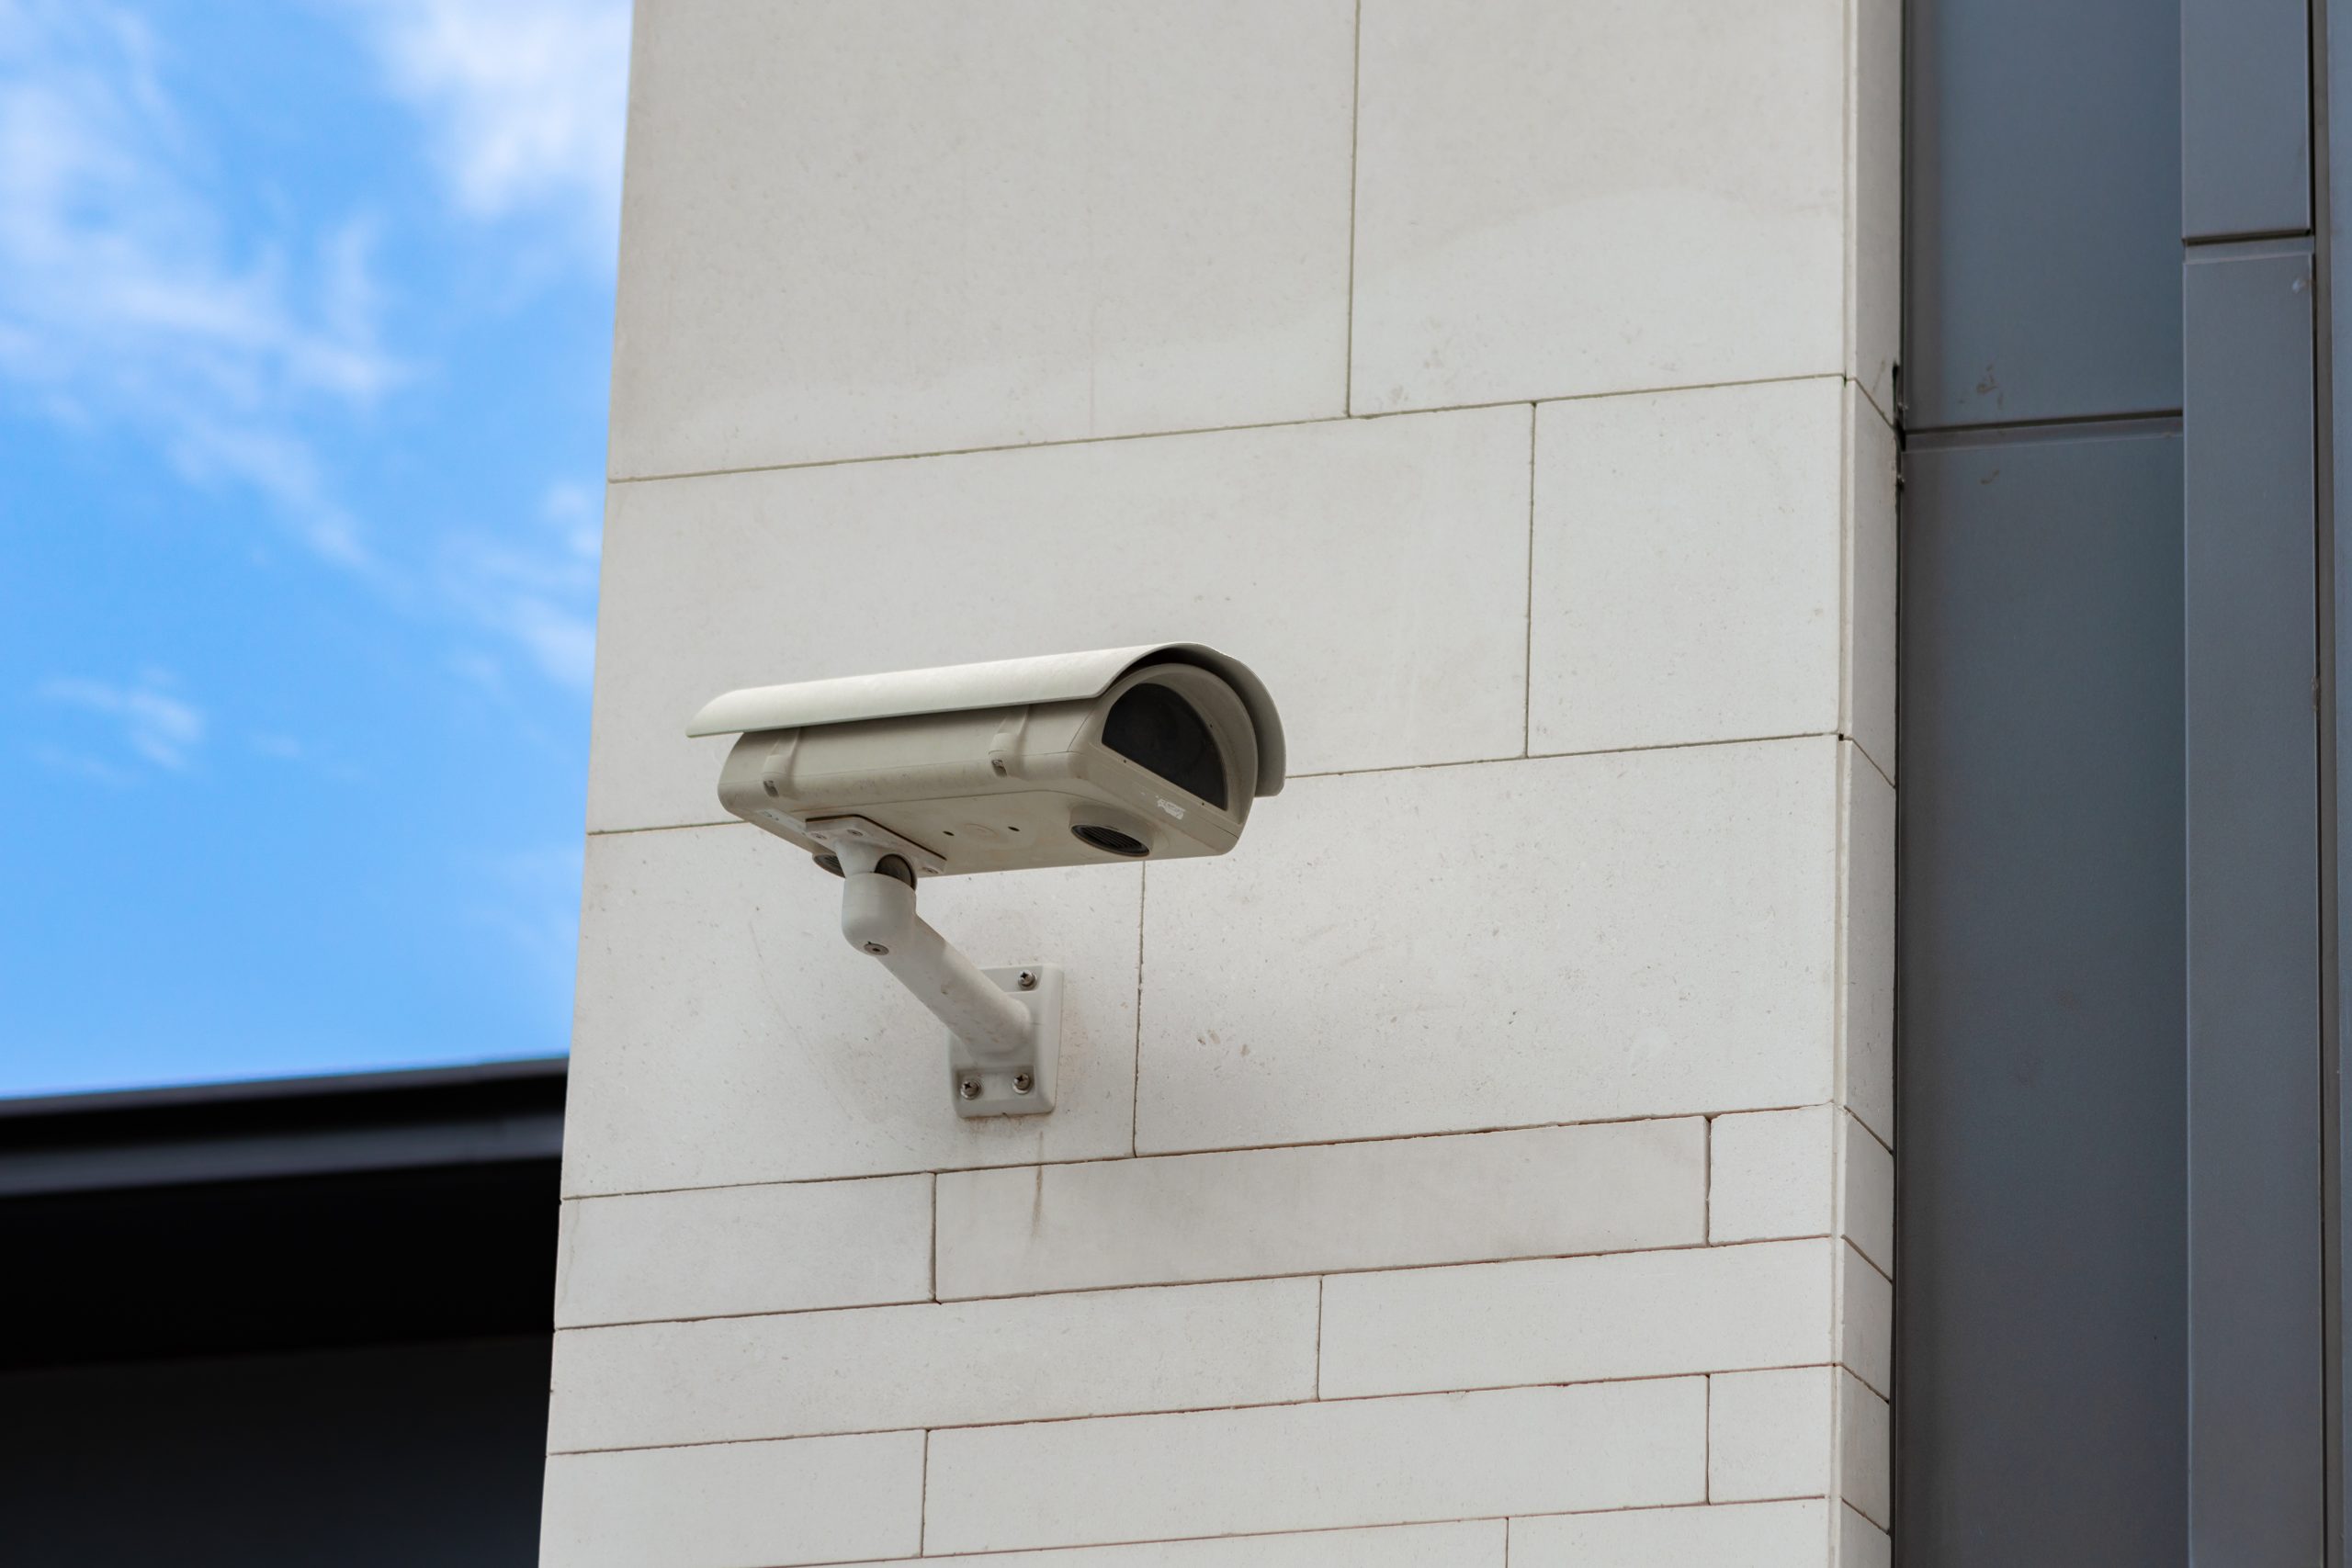 PROJEK MEMASANG DAN MENGANTI BARU SISTEM CCTV DI PETRON SUNGAI BULOH